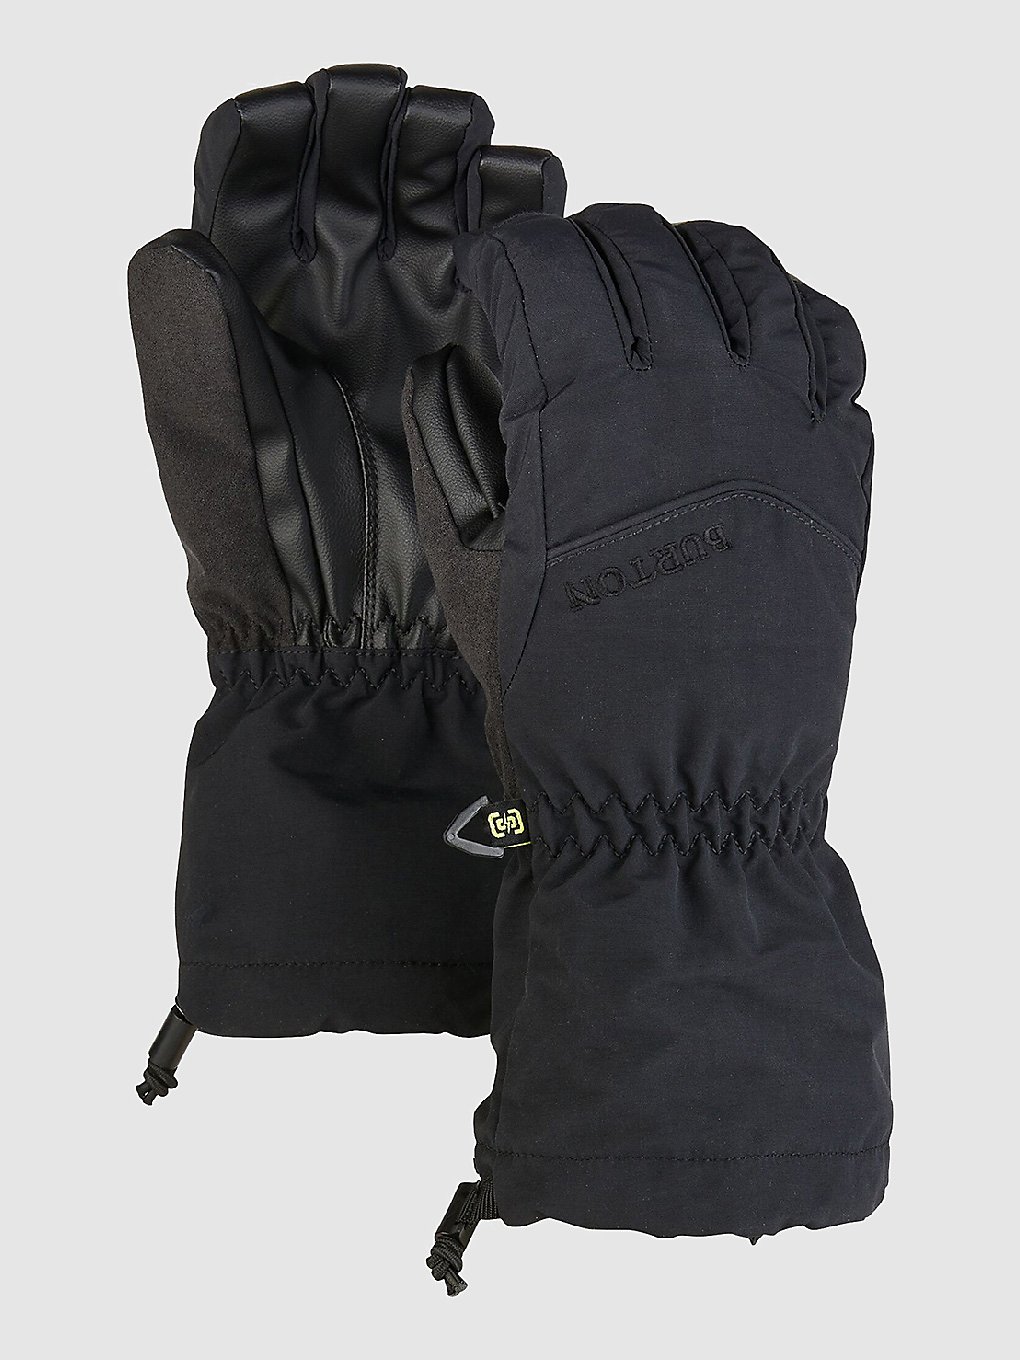 Burton Profile Handschoenen zwart